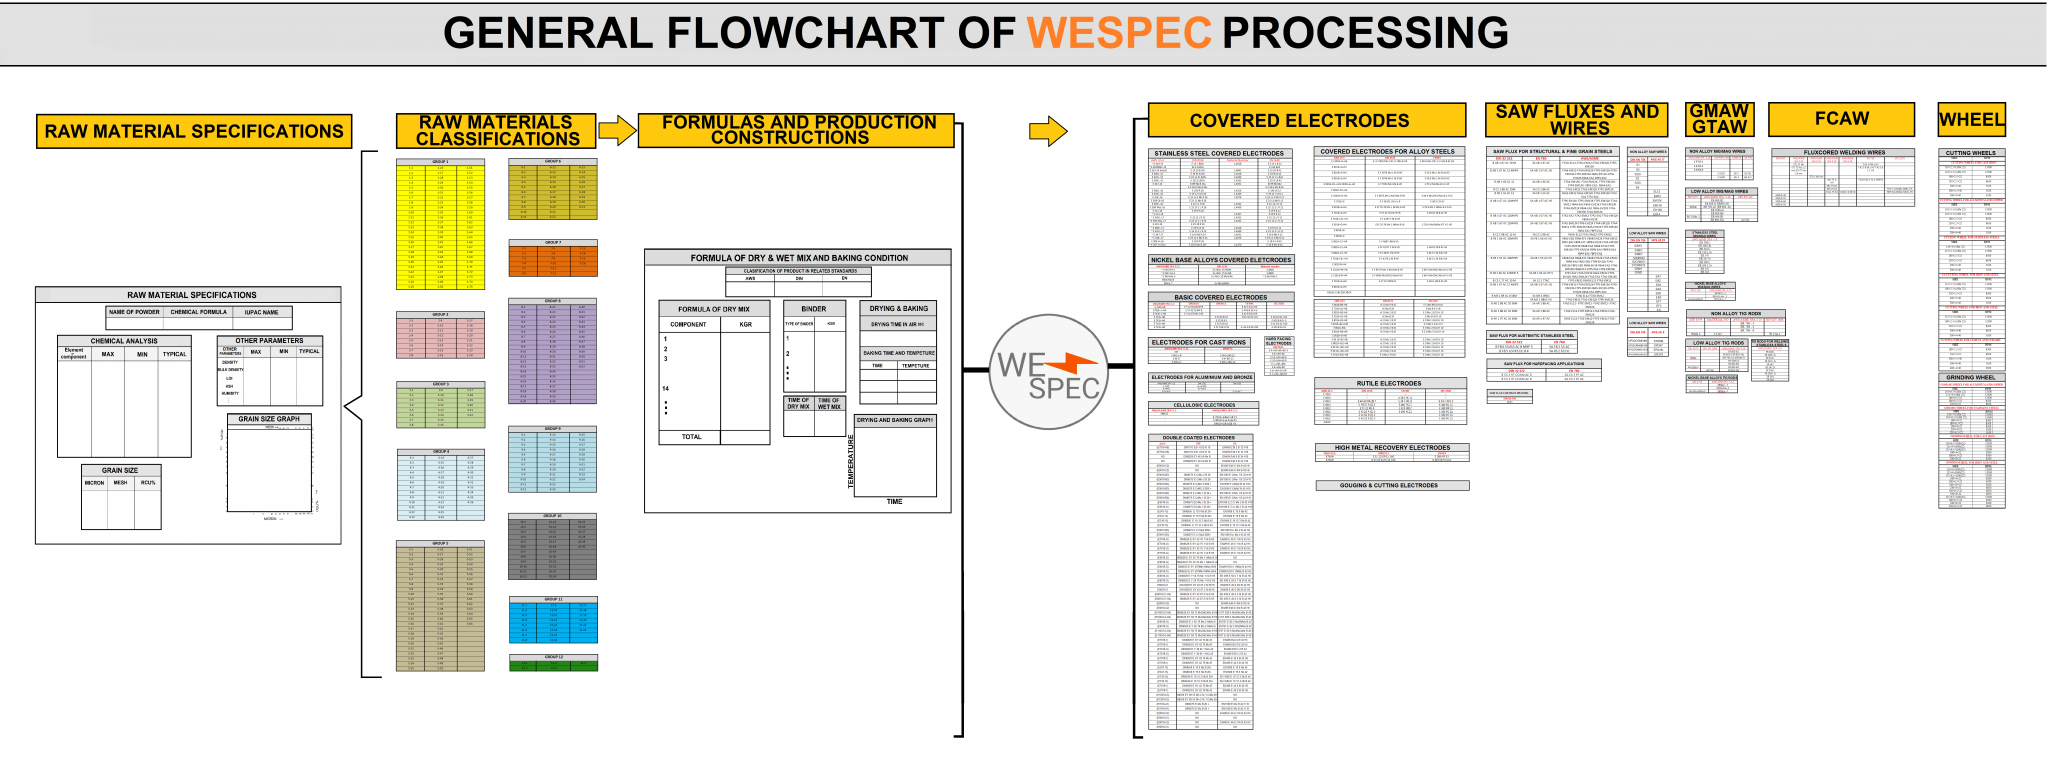 WESPEC Flowchart